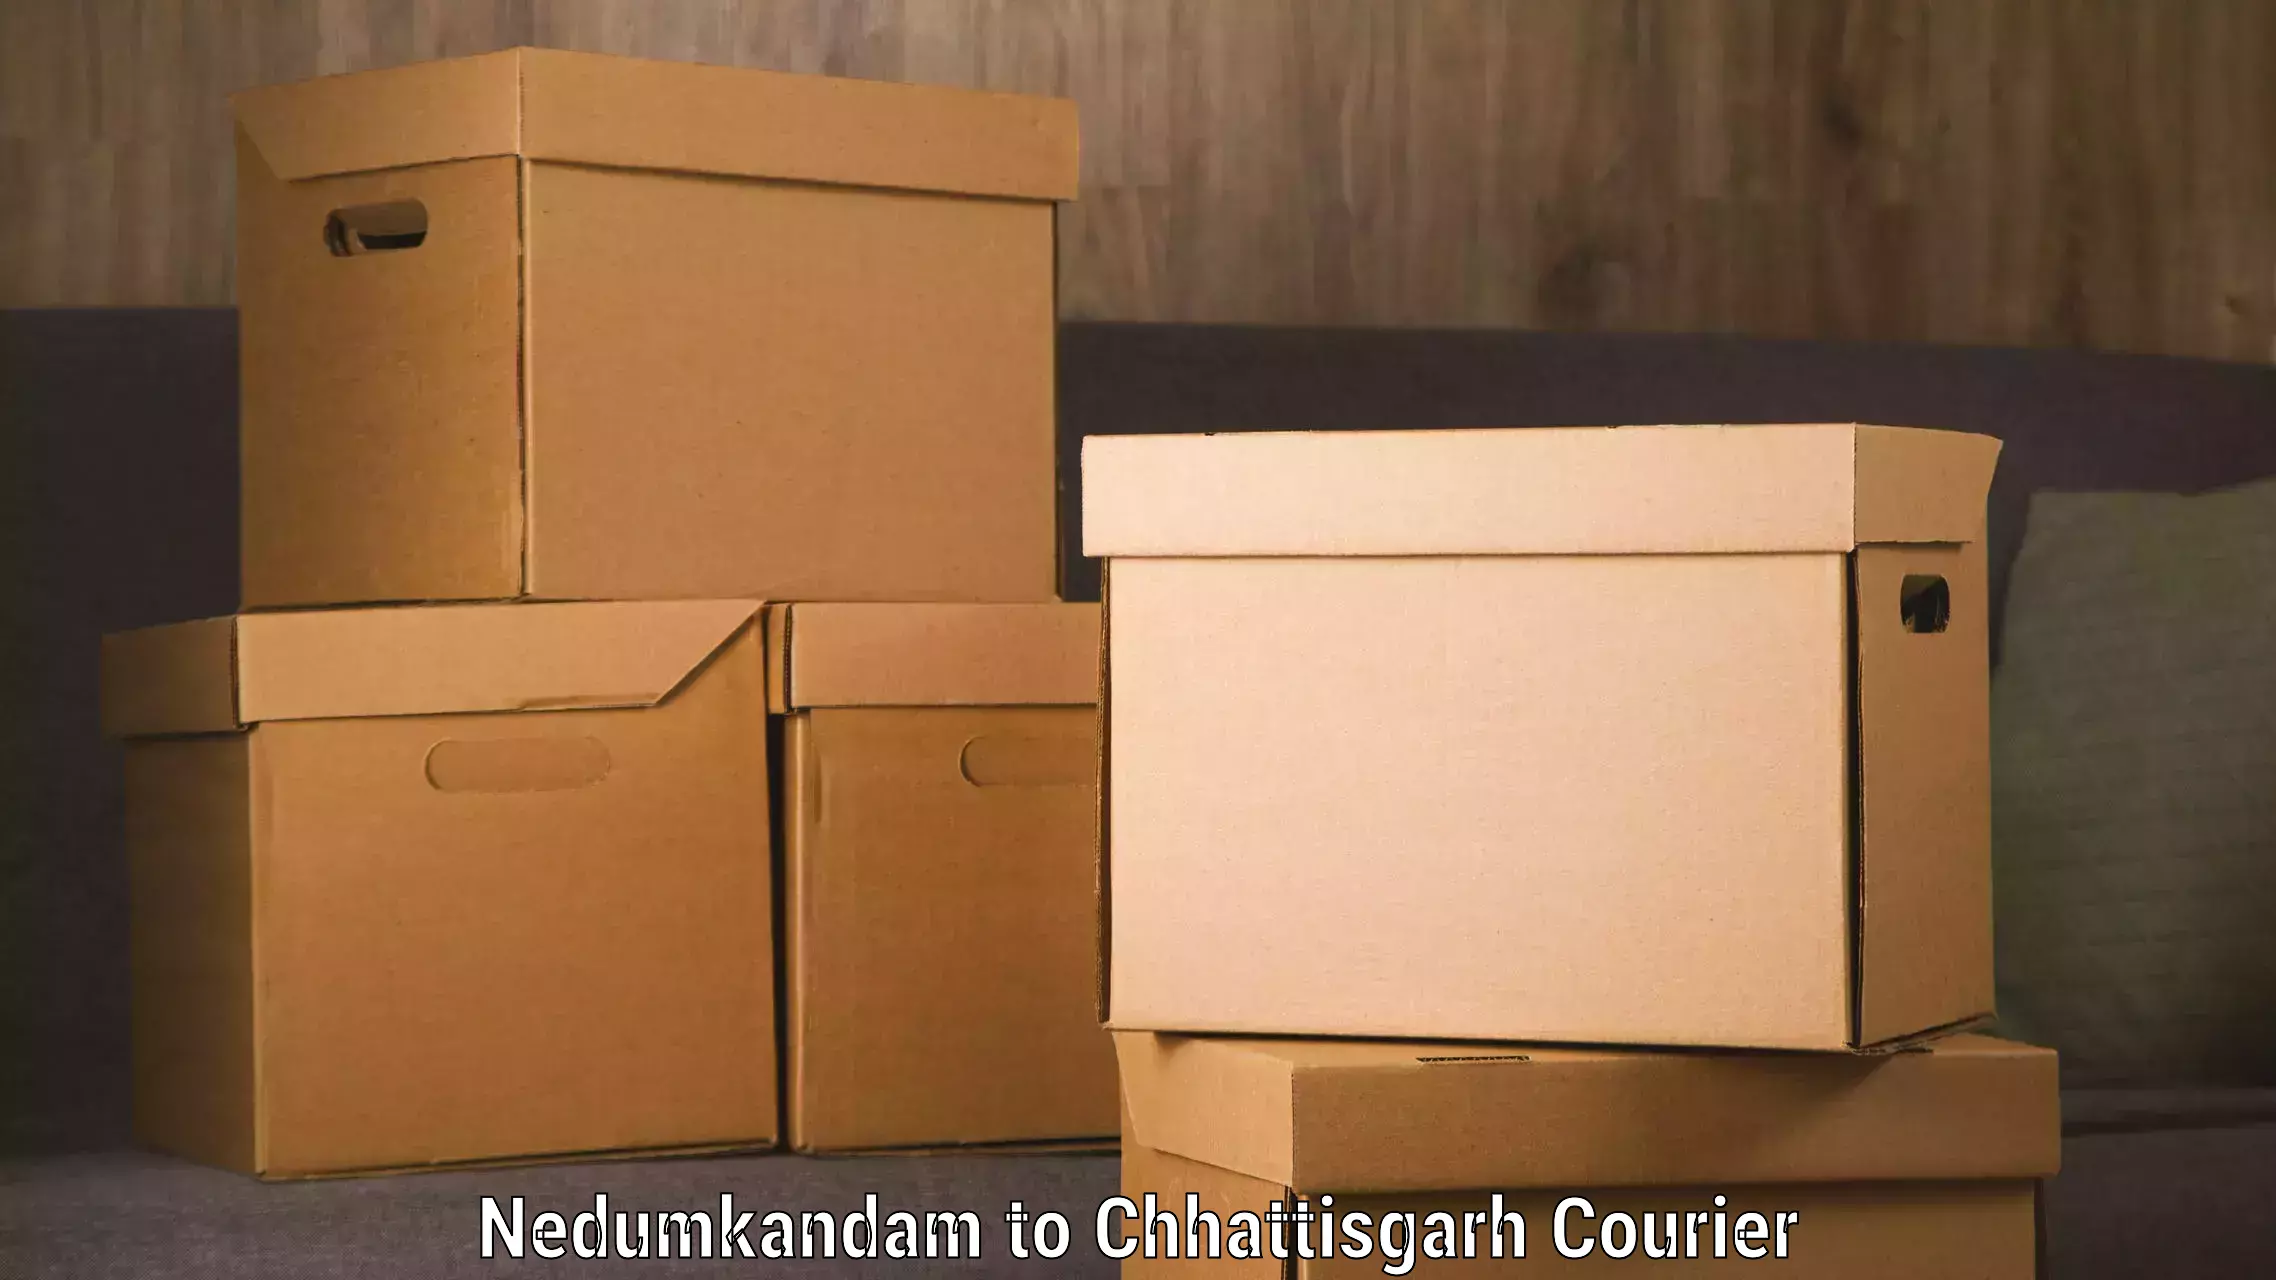 Nationwide delivery network Nedumkandam to Bijapur Chhattisgarh